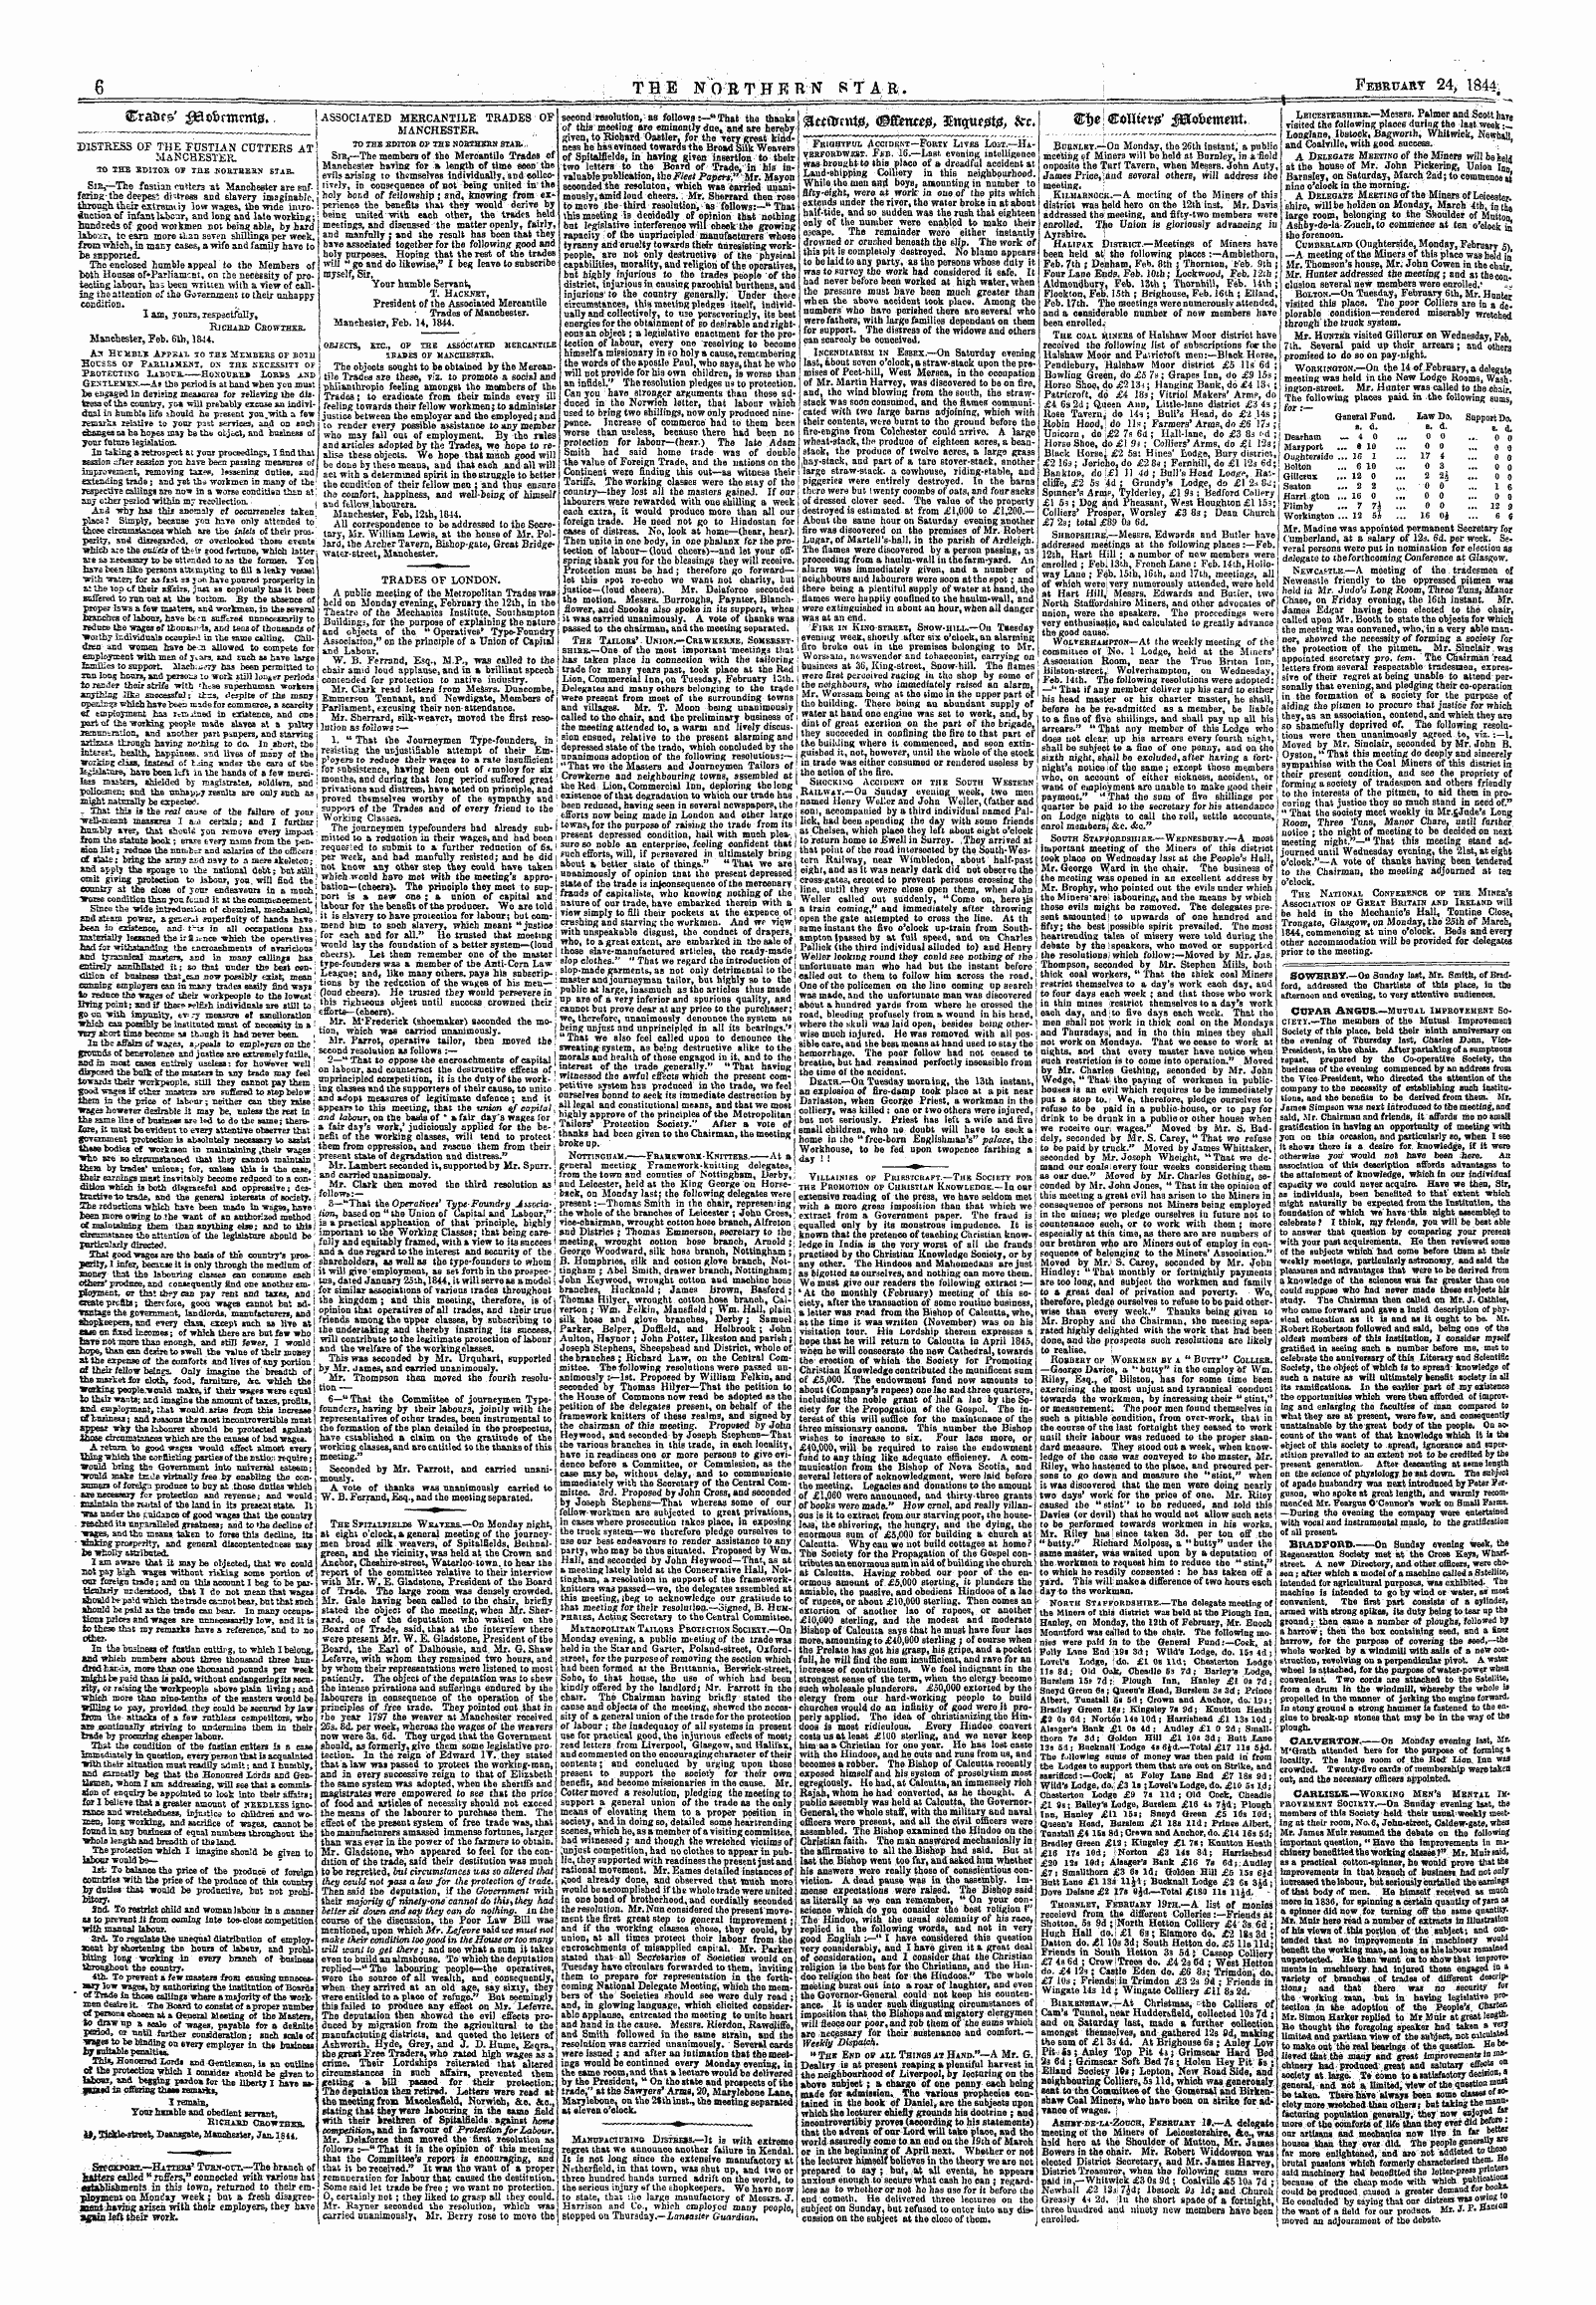 Northern Star (1837-1852): jS F Y, 1st edition - 2ti)E!&Oi*Ttfv0' $Til&Lt;Foettmxt&Gt;